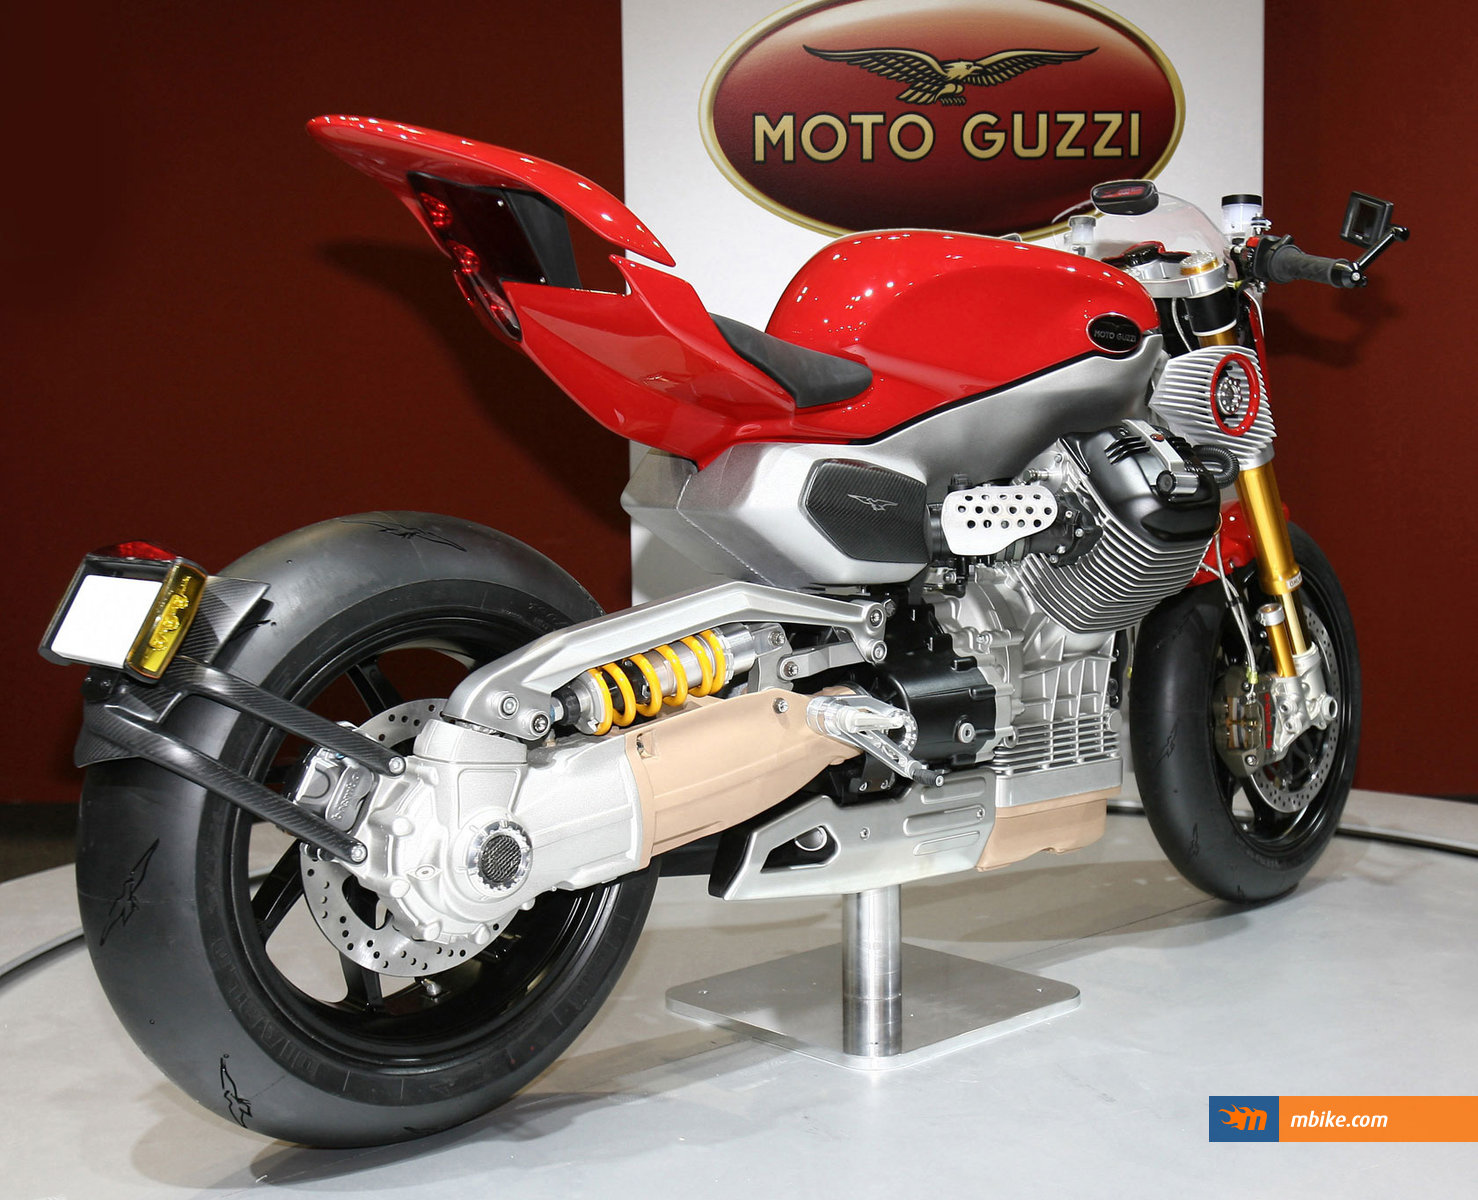 2010 Moto Guzzi V12 LM Concept